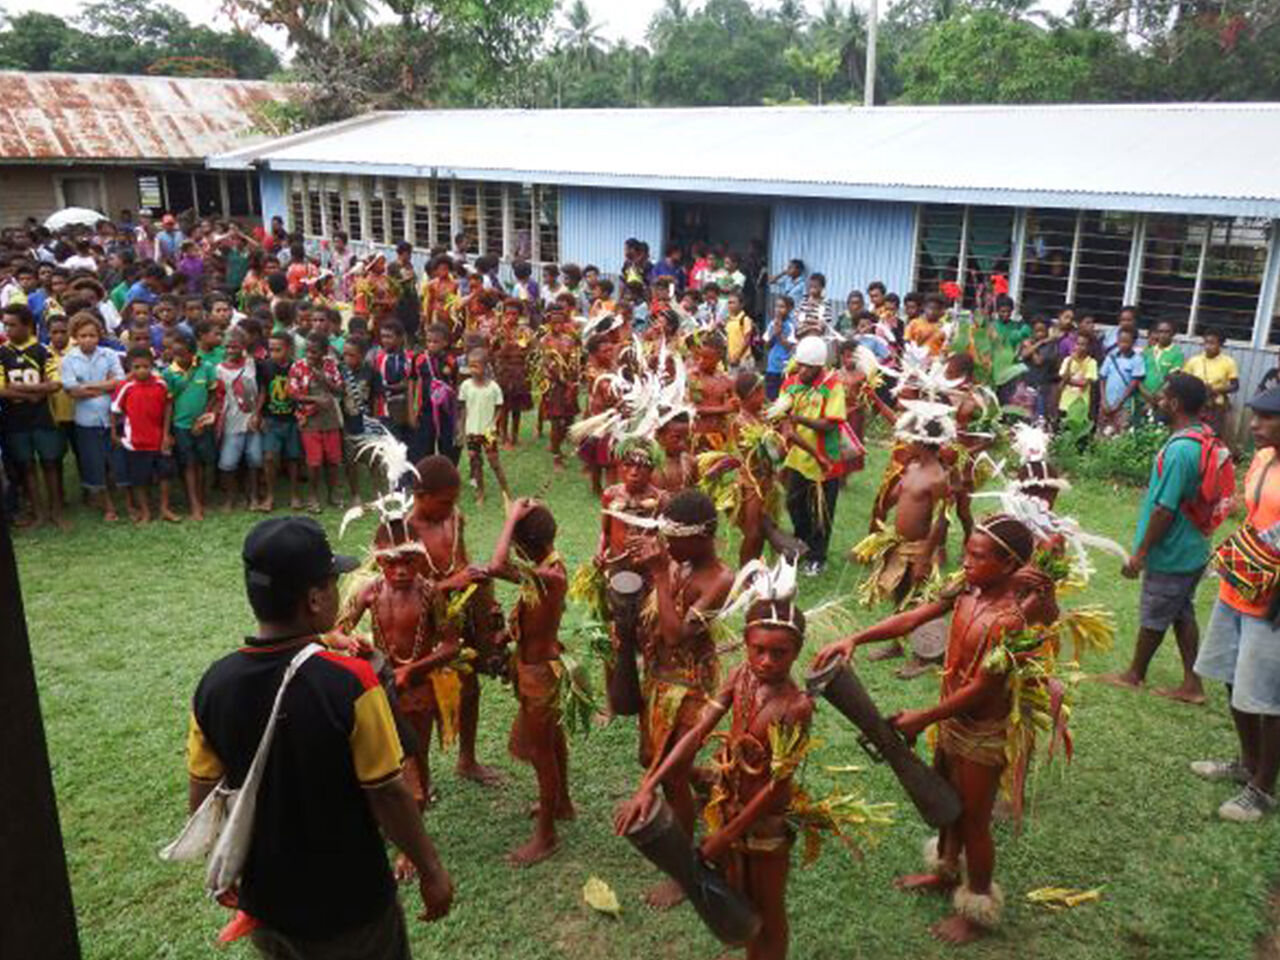 パプアニューギニアの子どもたち